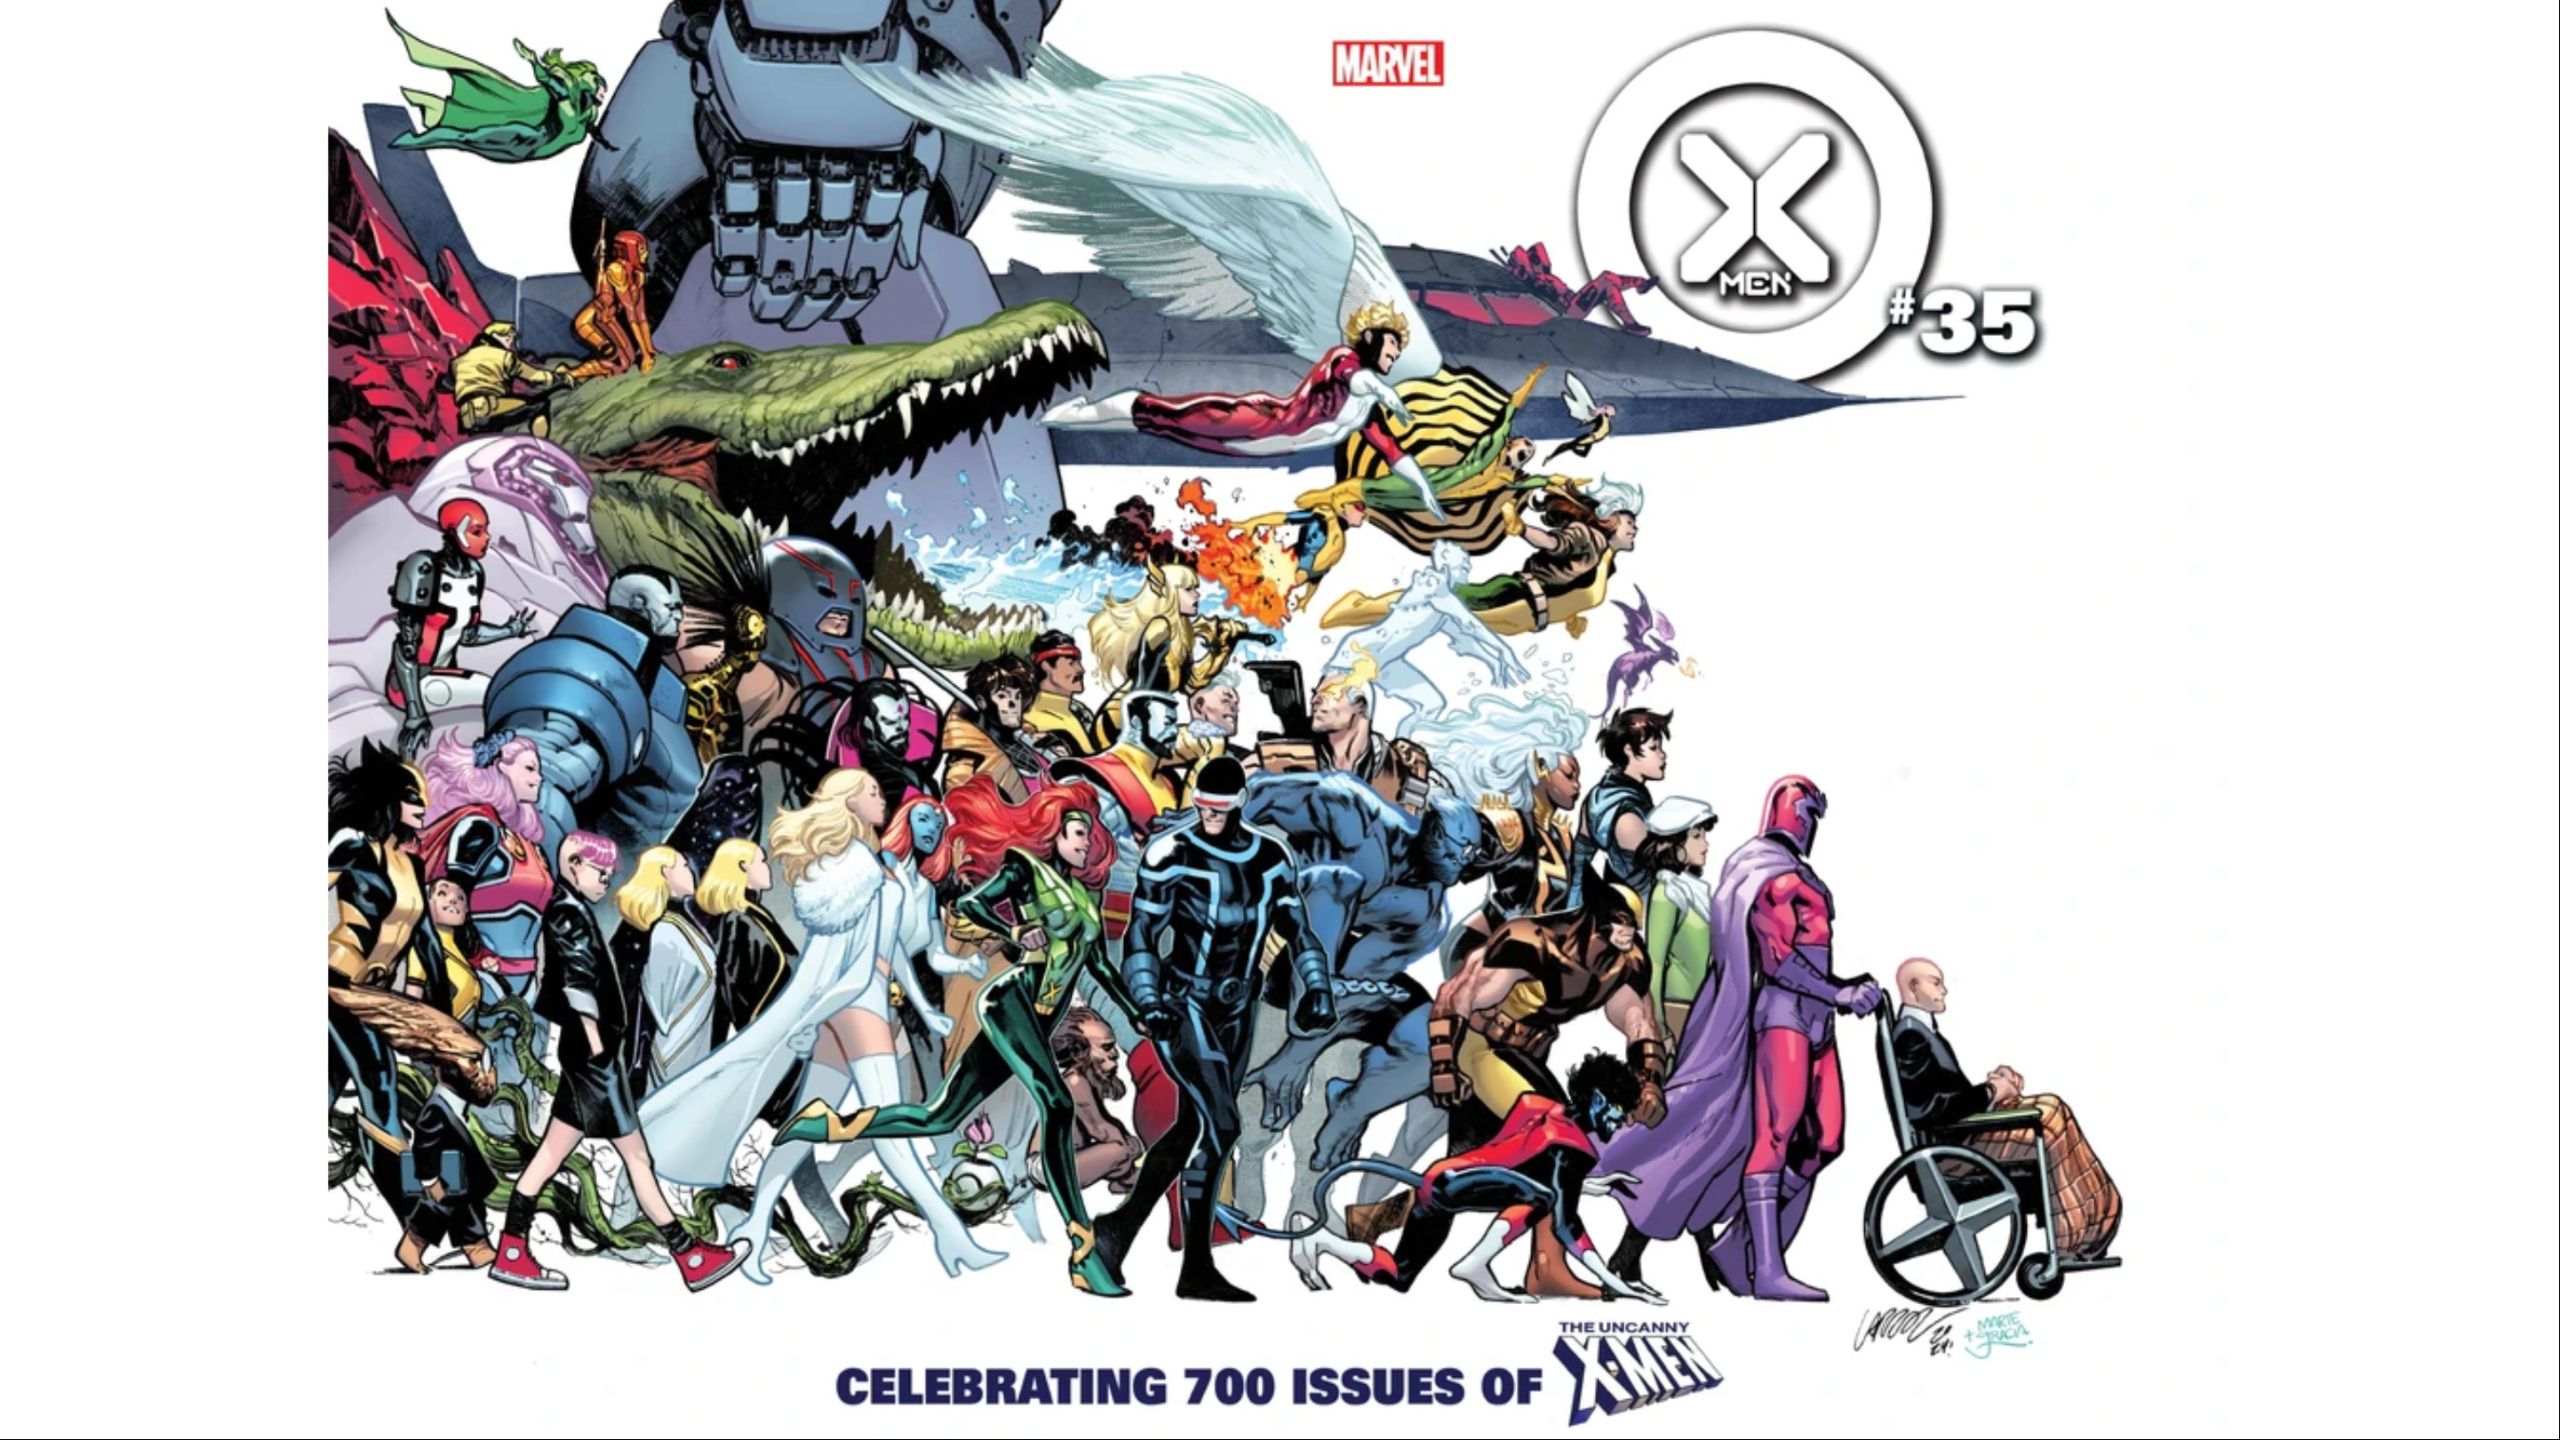 The Krakoa Era X-Men following Magneto and Xavier